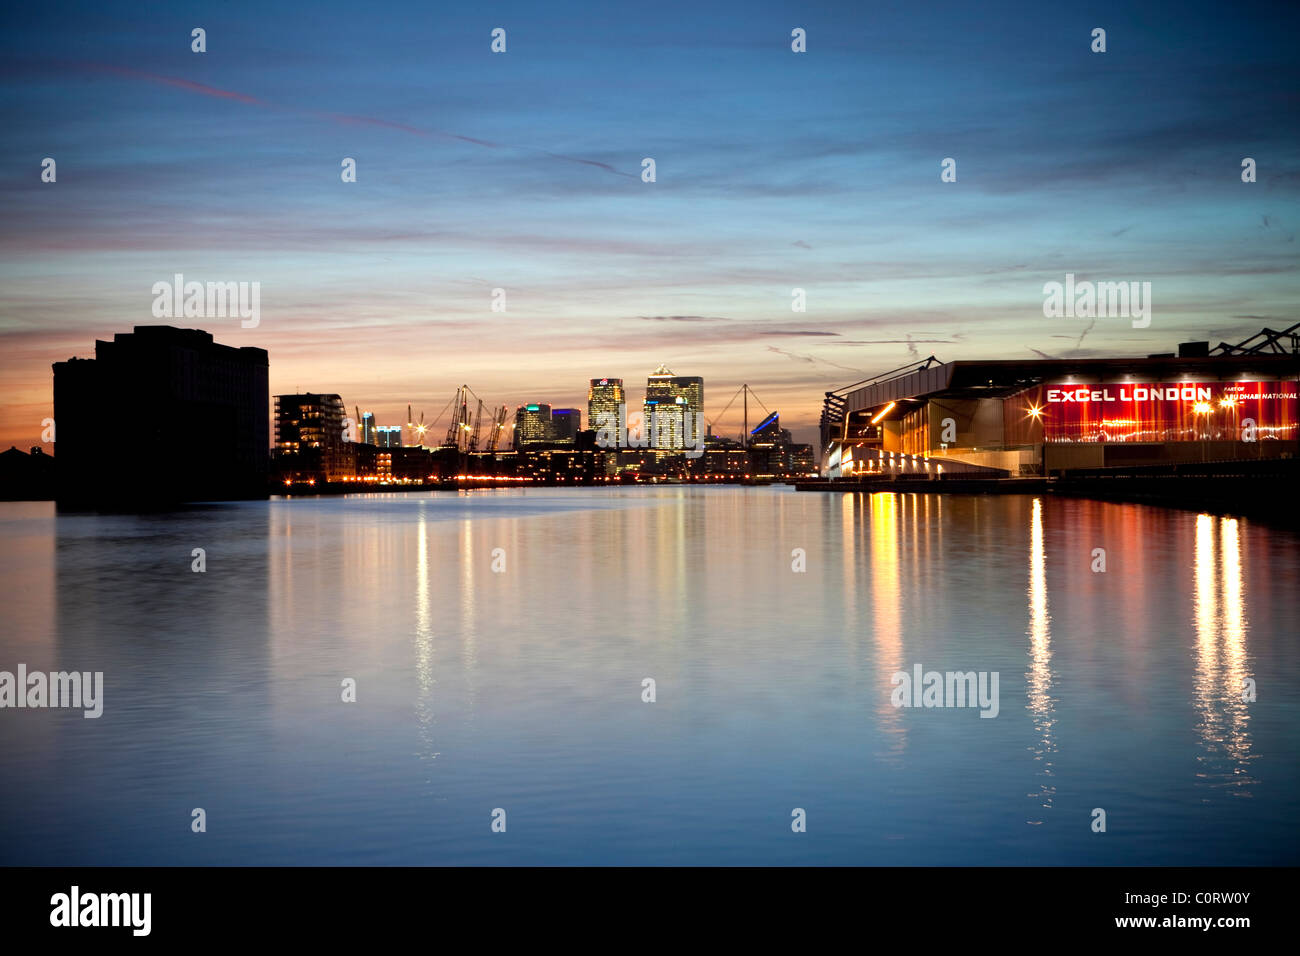 Isle of Dogs, et financier de Londres Centre Excel au crépuscule se reflétant dans les eaux de la Royal Victoria Dock Banque D'Images